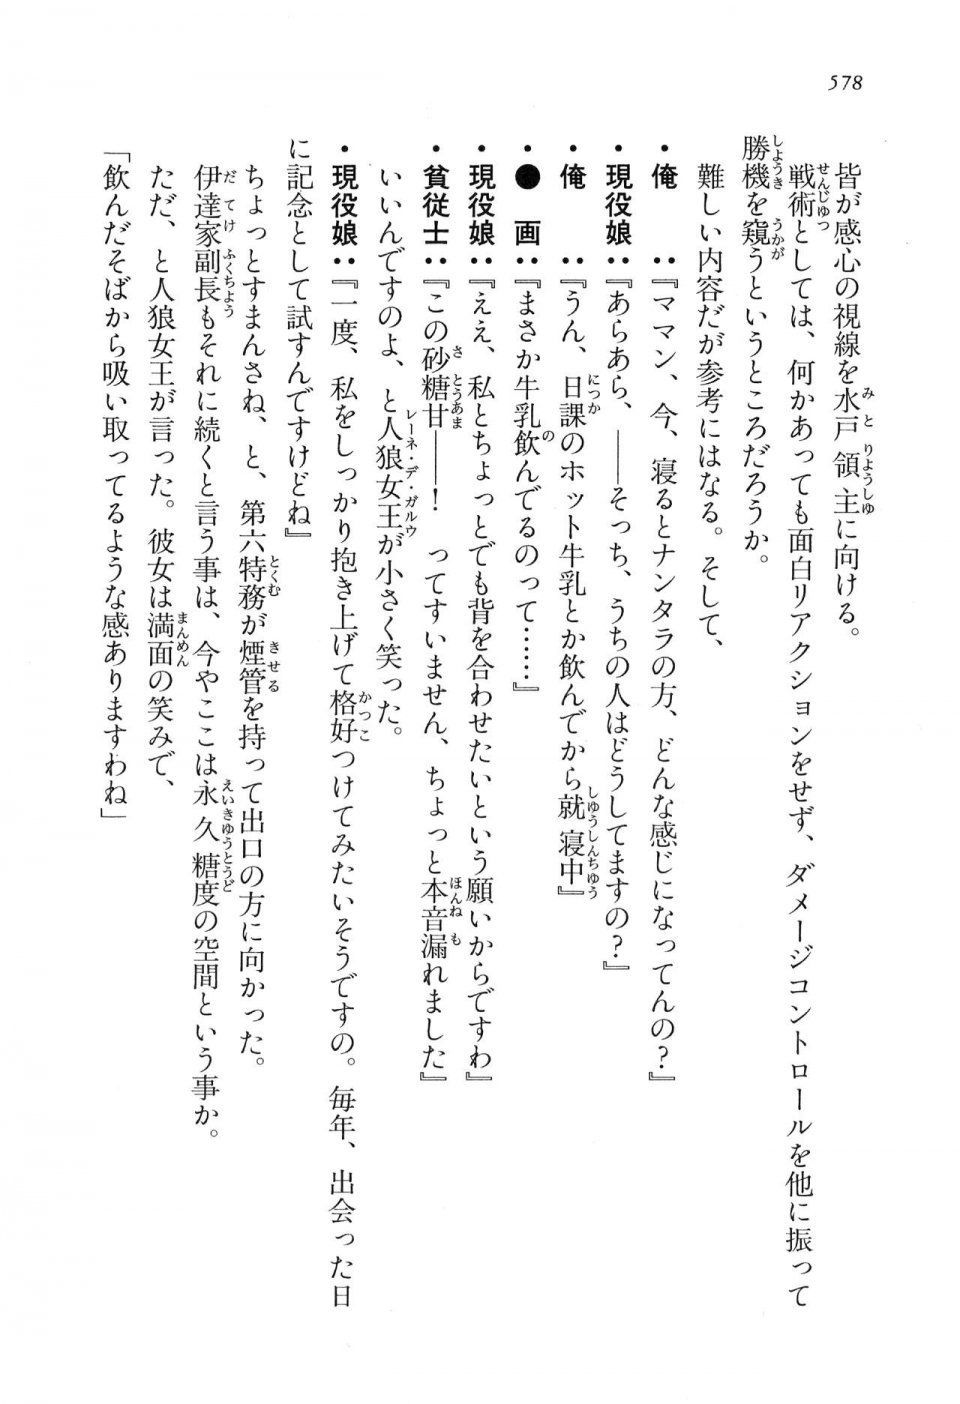 Kyoukai Senjou no Horizon LN Vol 16(7A) - Photo #578